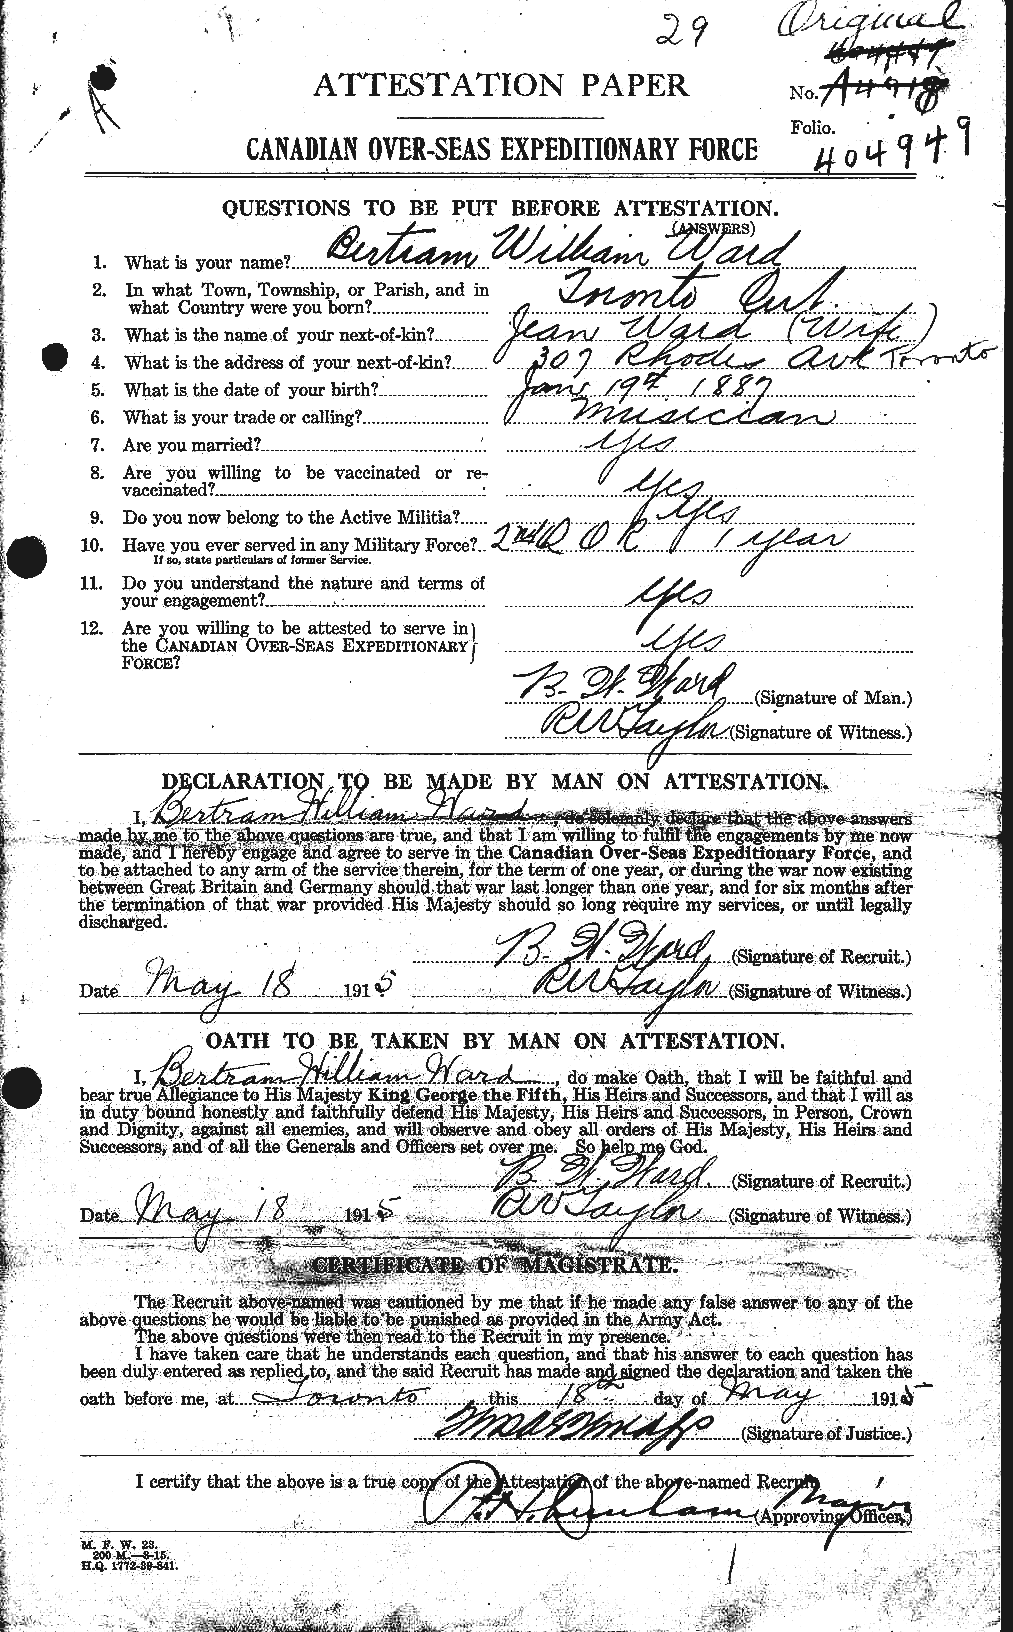 Dossiers du Personnel de la Première Guerre mondiale - CEC 657548a